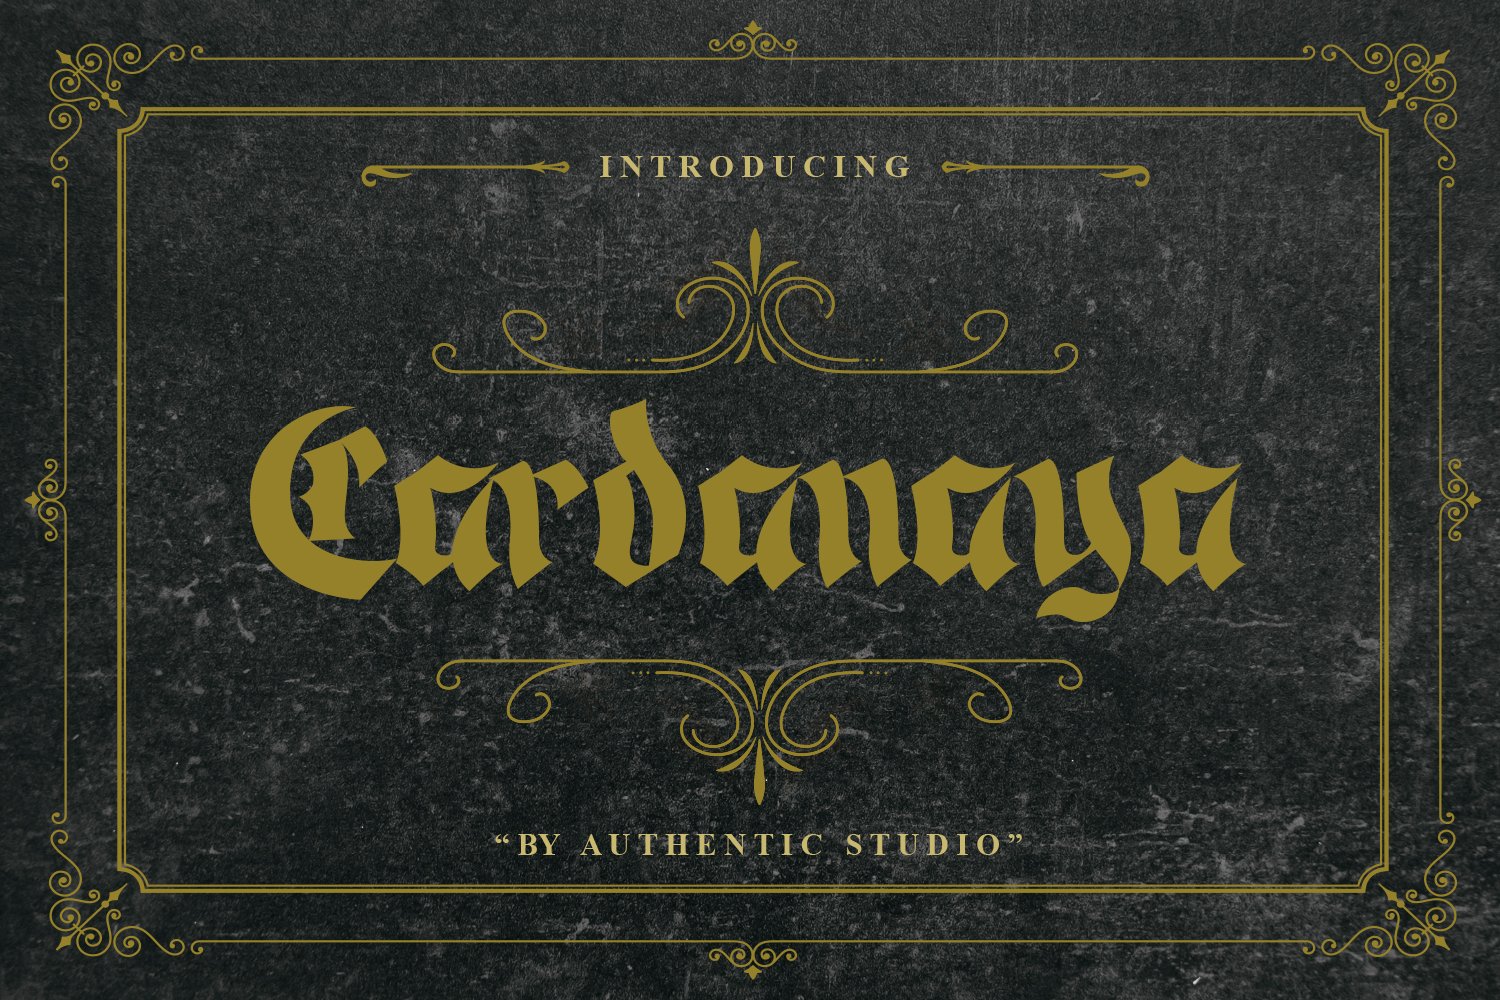 Cardanaya Blackletter cover image.